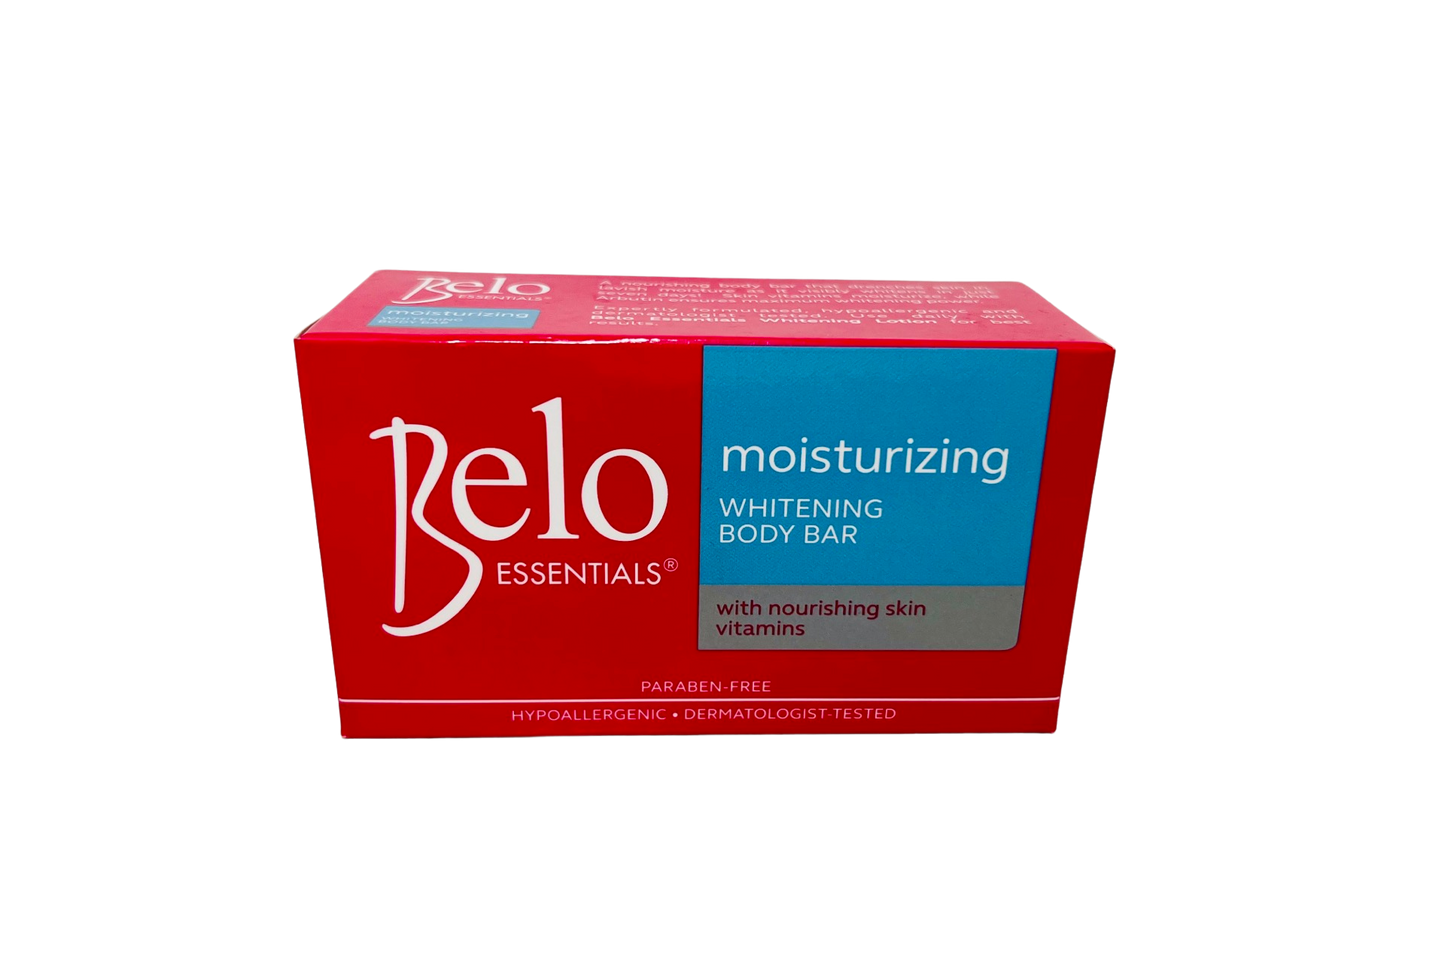 Belo Essentials Moisturizing Whitening Body Bar (Blue) 135g